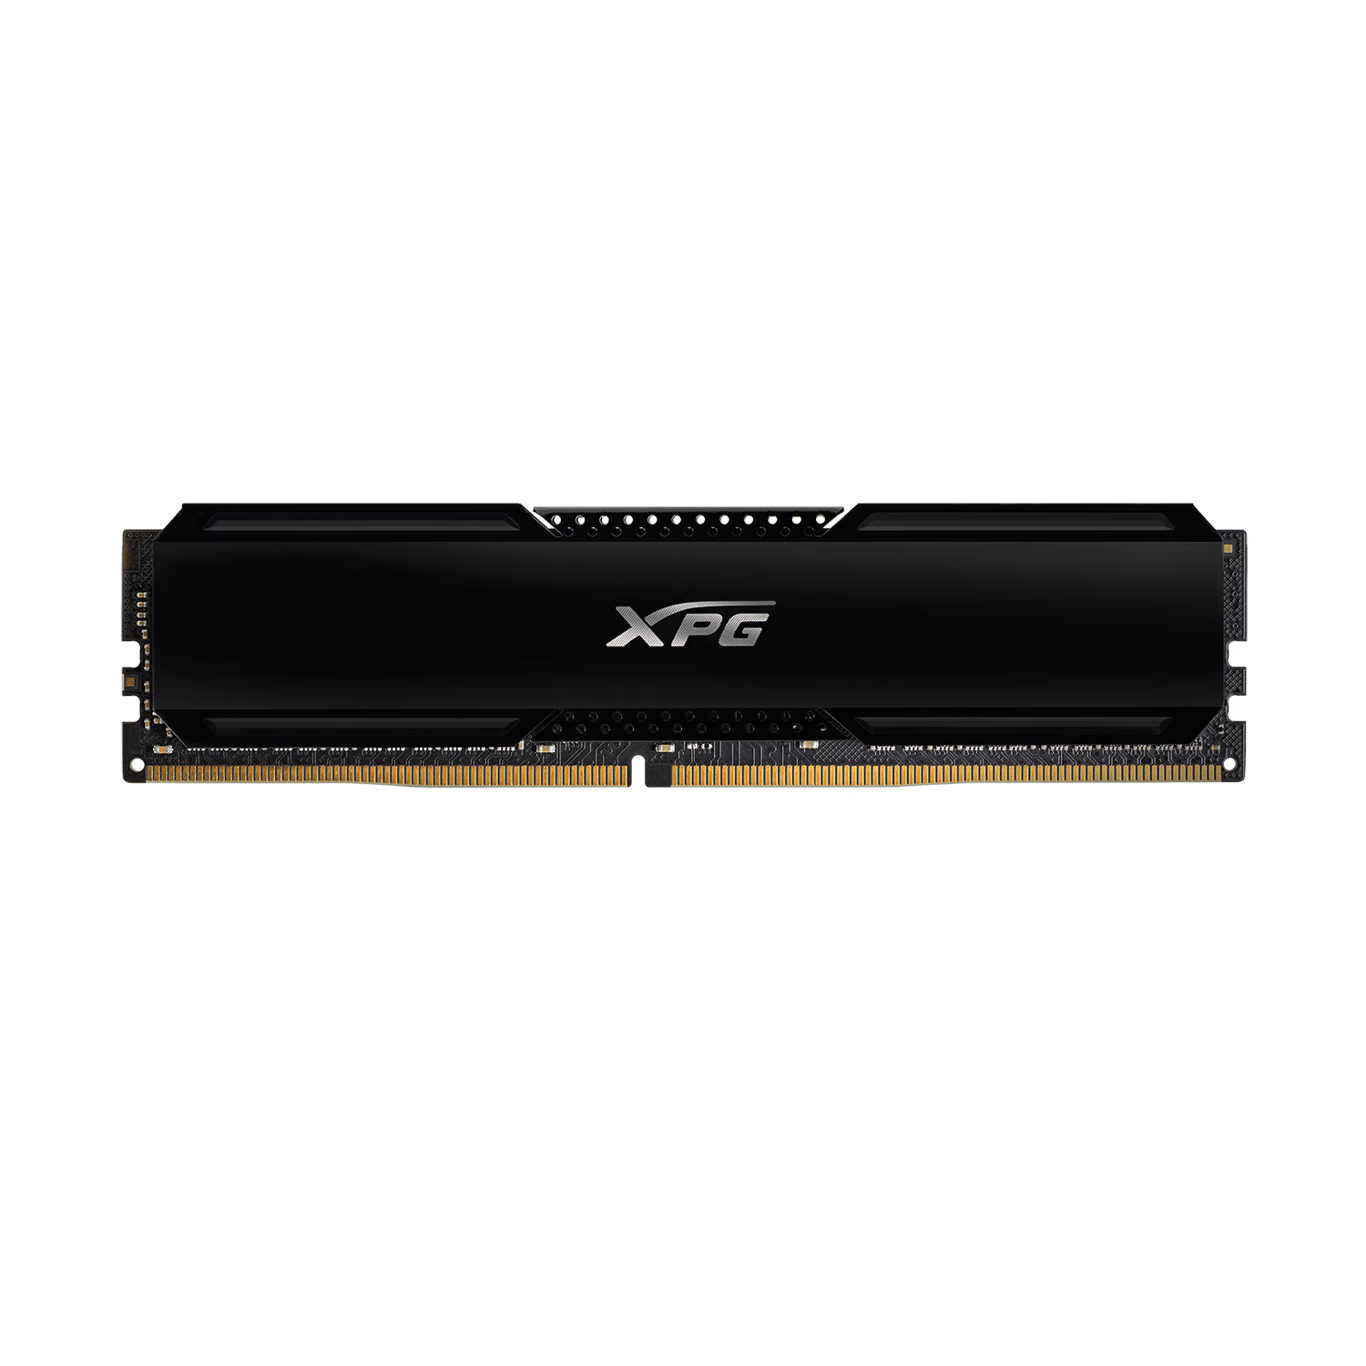 ADATA XPG GAMMIX D20 8GB (8GB x1) DDR4 3200MHz BLACK * 2 - AX4U320088G16A-CBK20